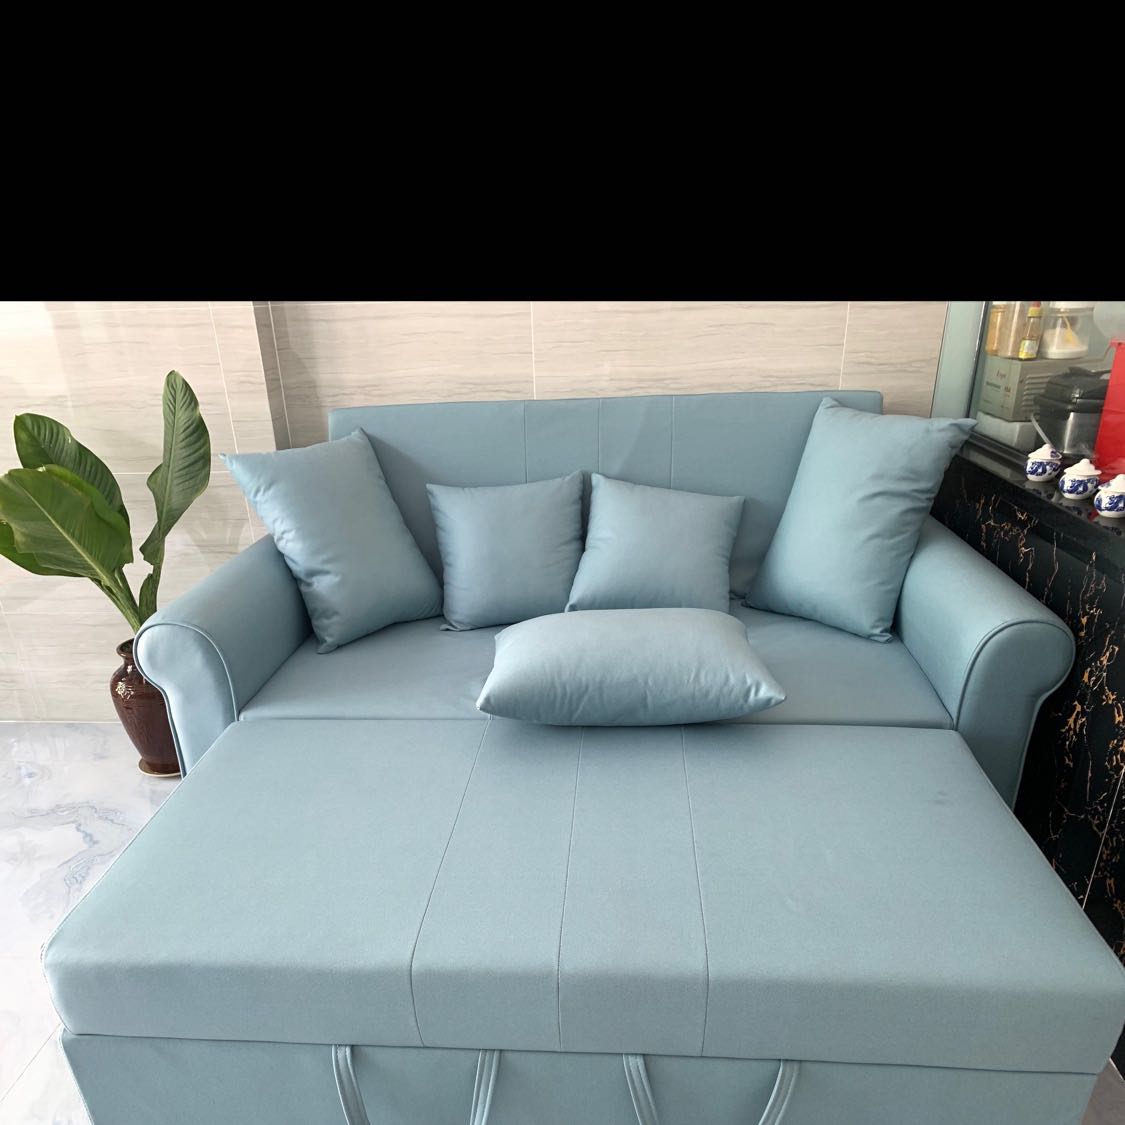 Sofa giường kéo Tundo thông minh màu xanh dương nhạt